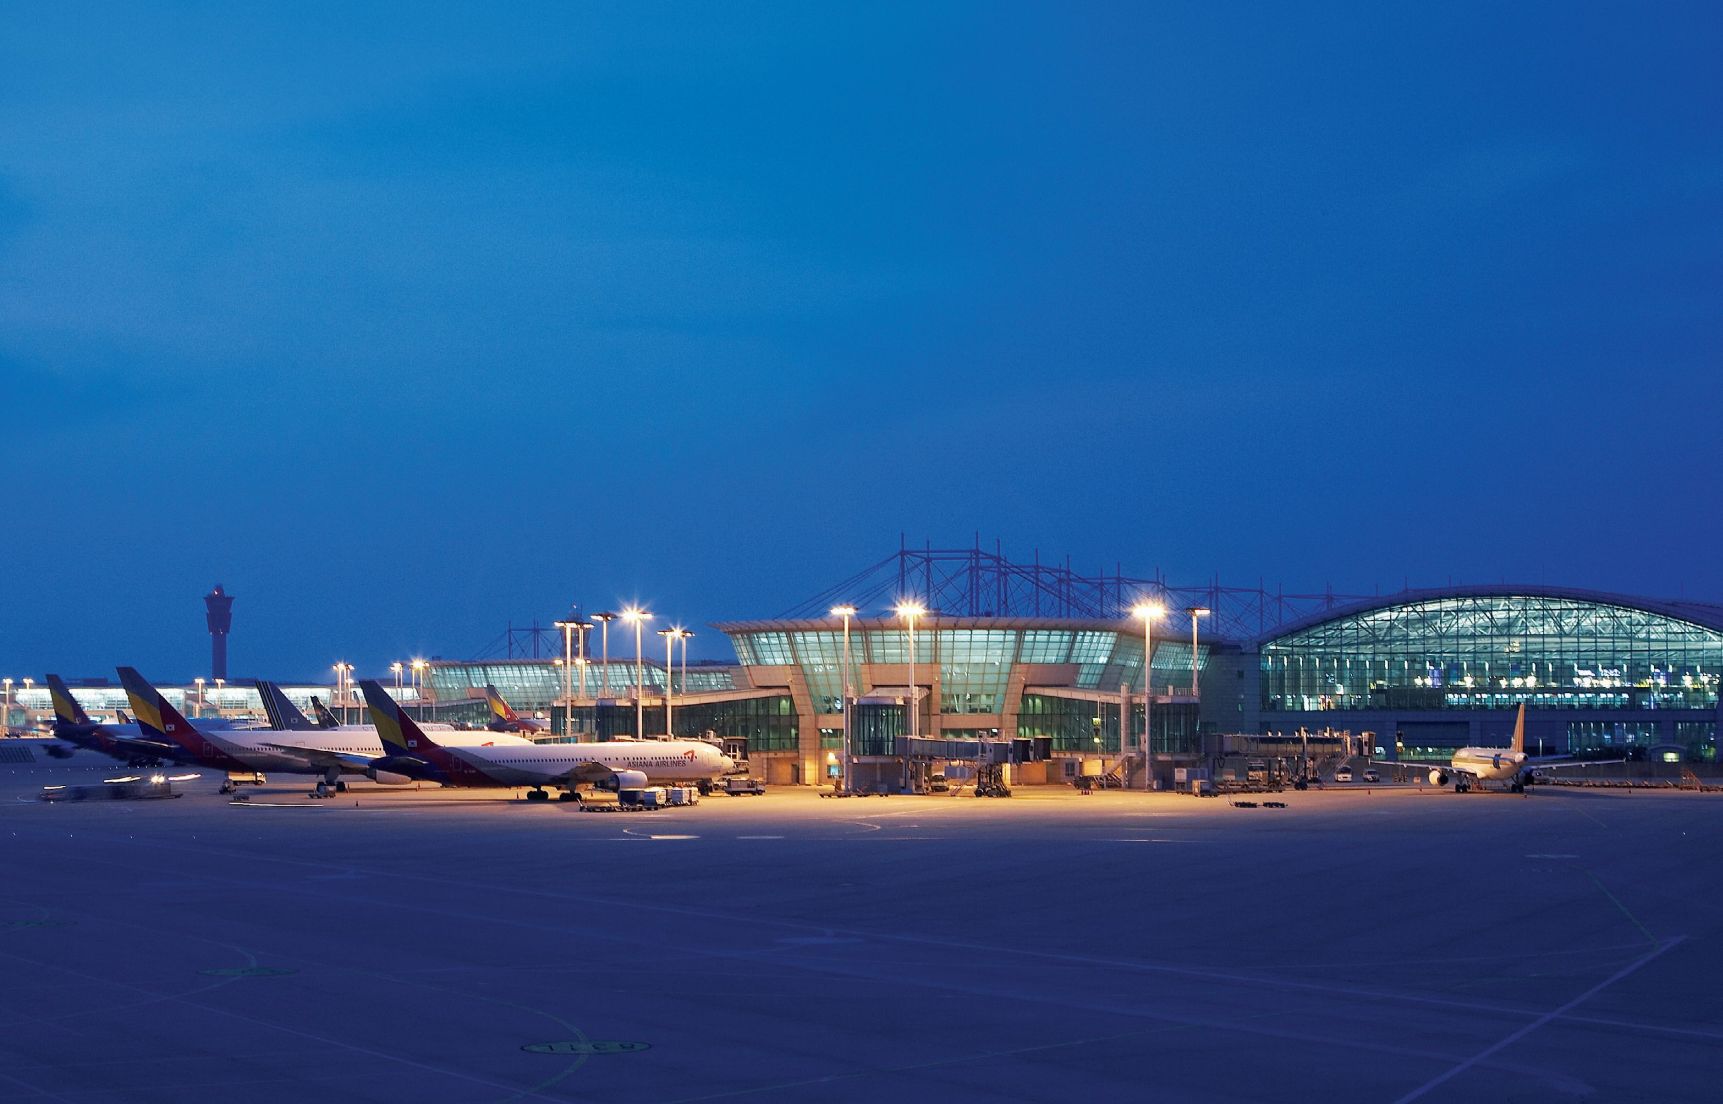 Nemcsak az utaskomfort, hanem az üzleti stratégia is döntő <br>(fotók: Incheon International Airport)